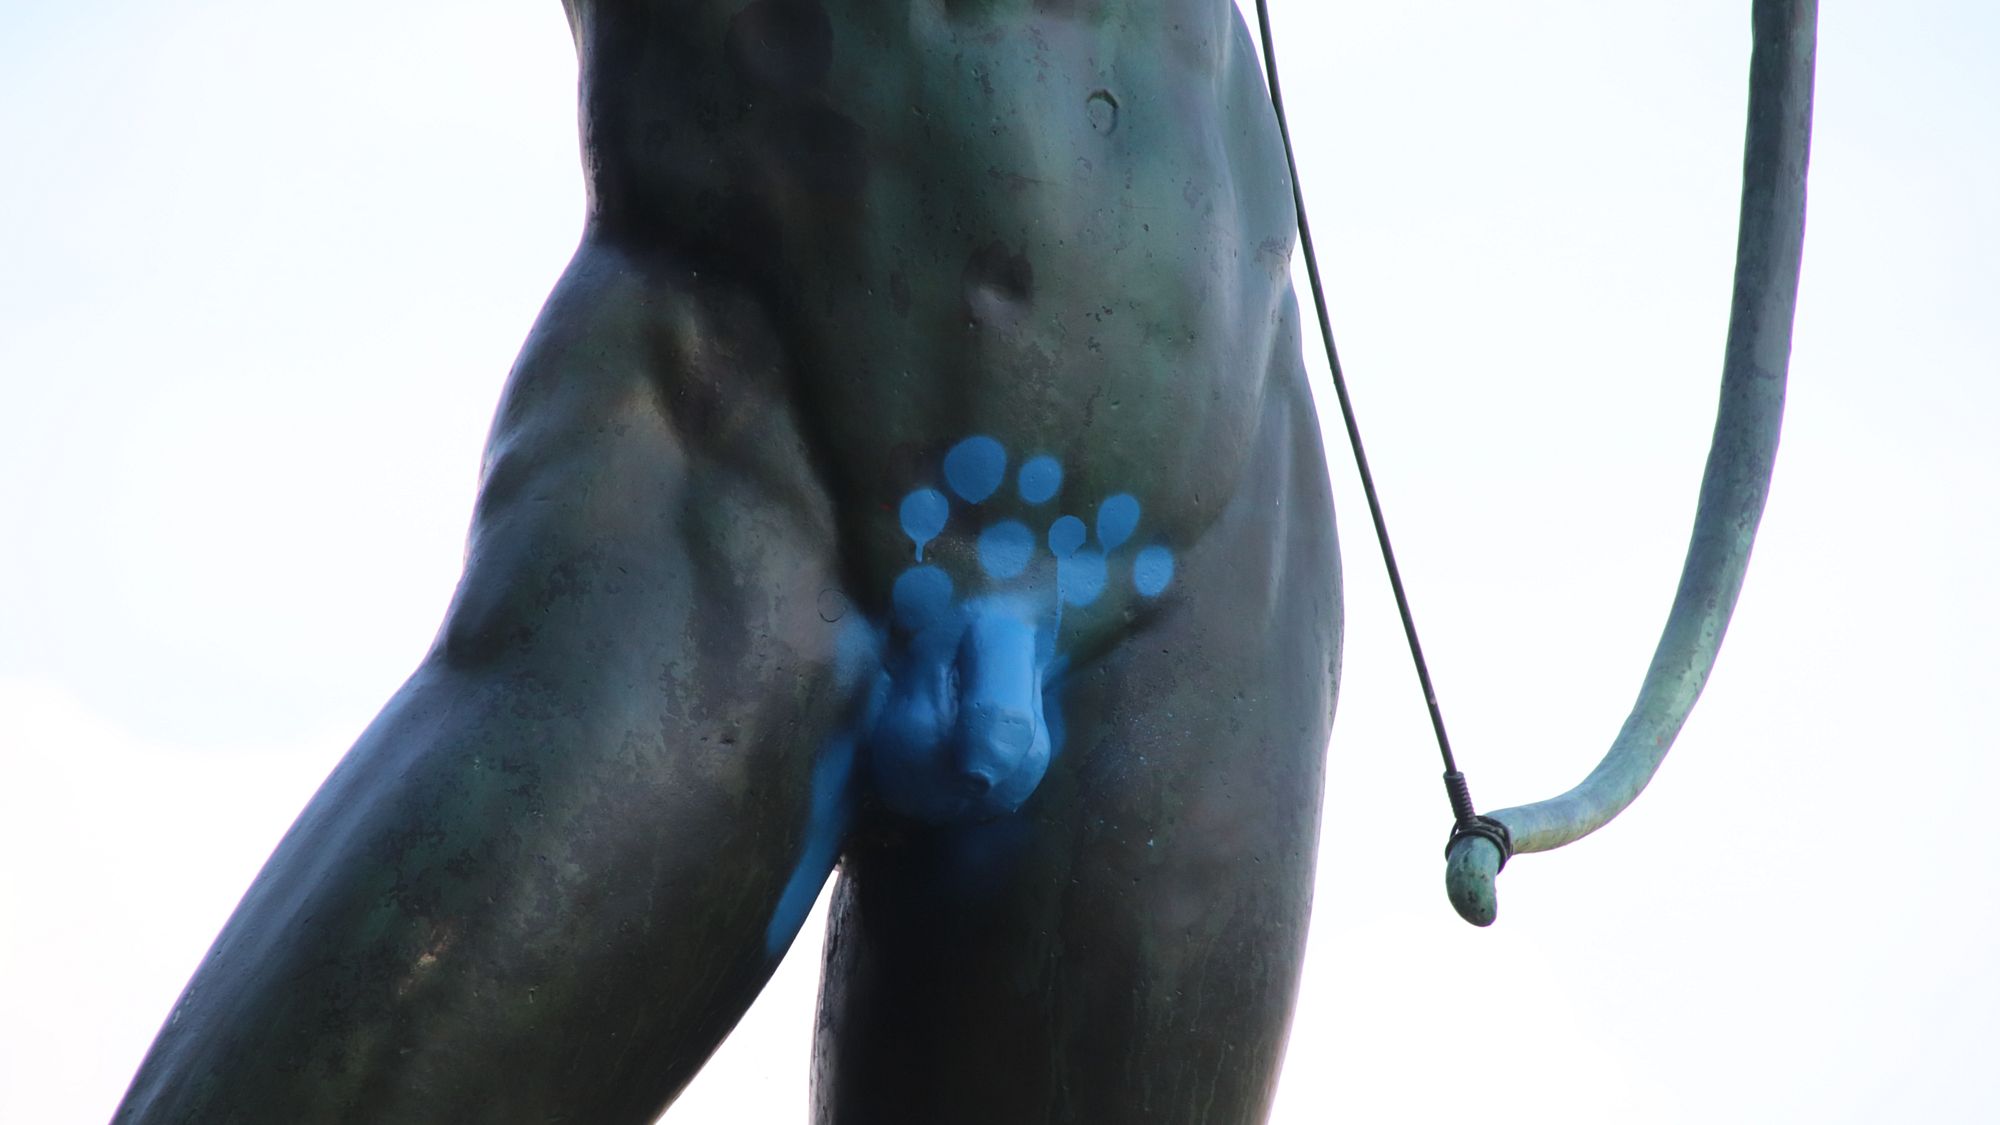 Mit markanter blauer Farbe hervorgehoben, der Penis des Bogenschützen.